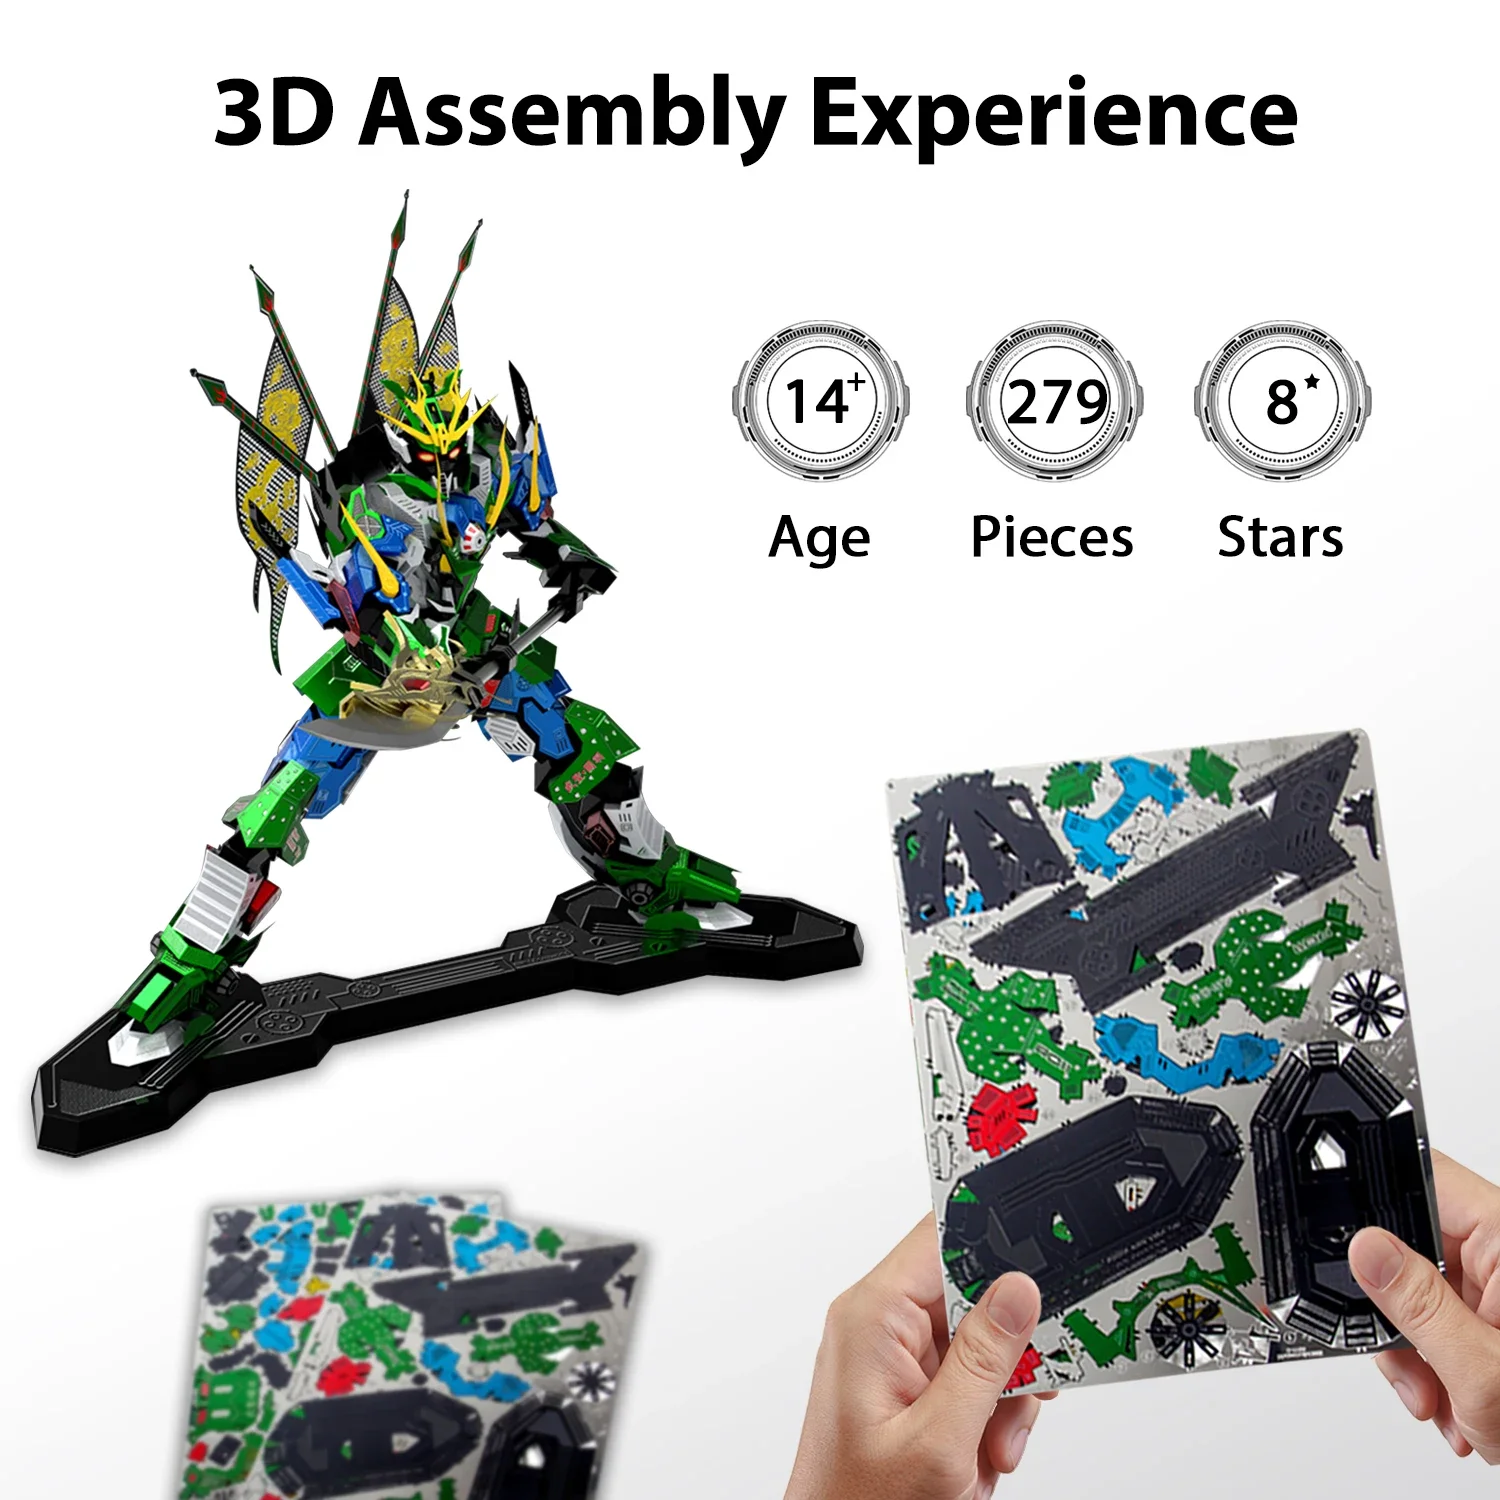 

Diyлобзик игрушки 3D металлический пазл игры Романтика тройных царств Guan Yu комплекты моделей рождественские подарки для взрослых